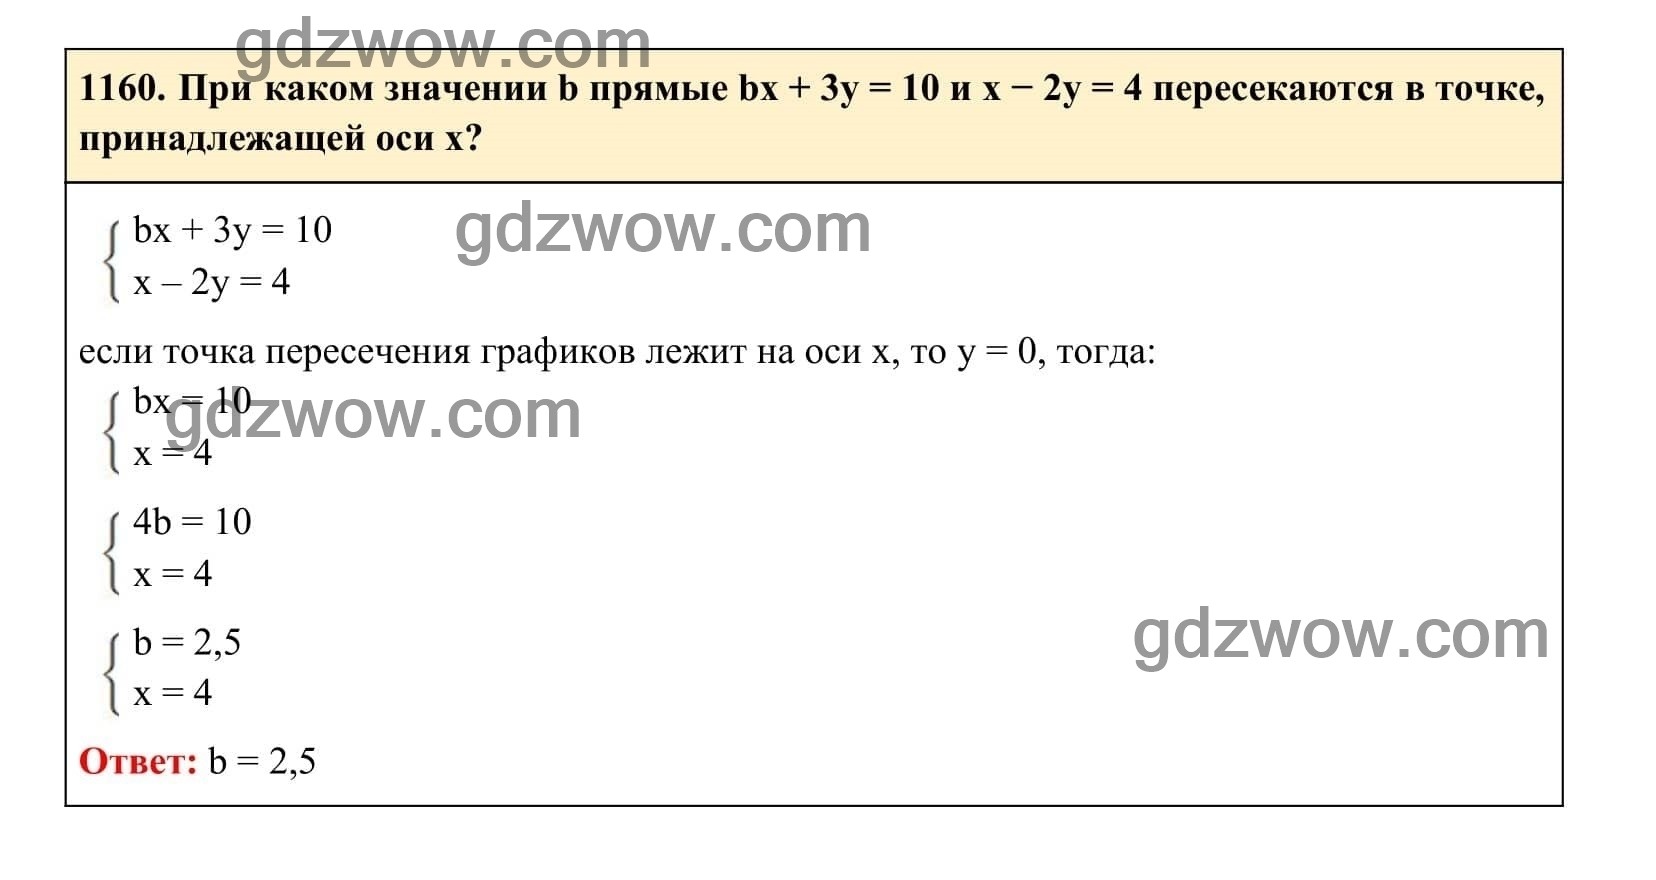 Упражнение 1160 - ГДЗ по Алгебре 7 класс Учебник Макарычев (решебник) - GDZwow